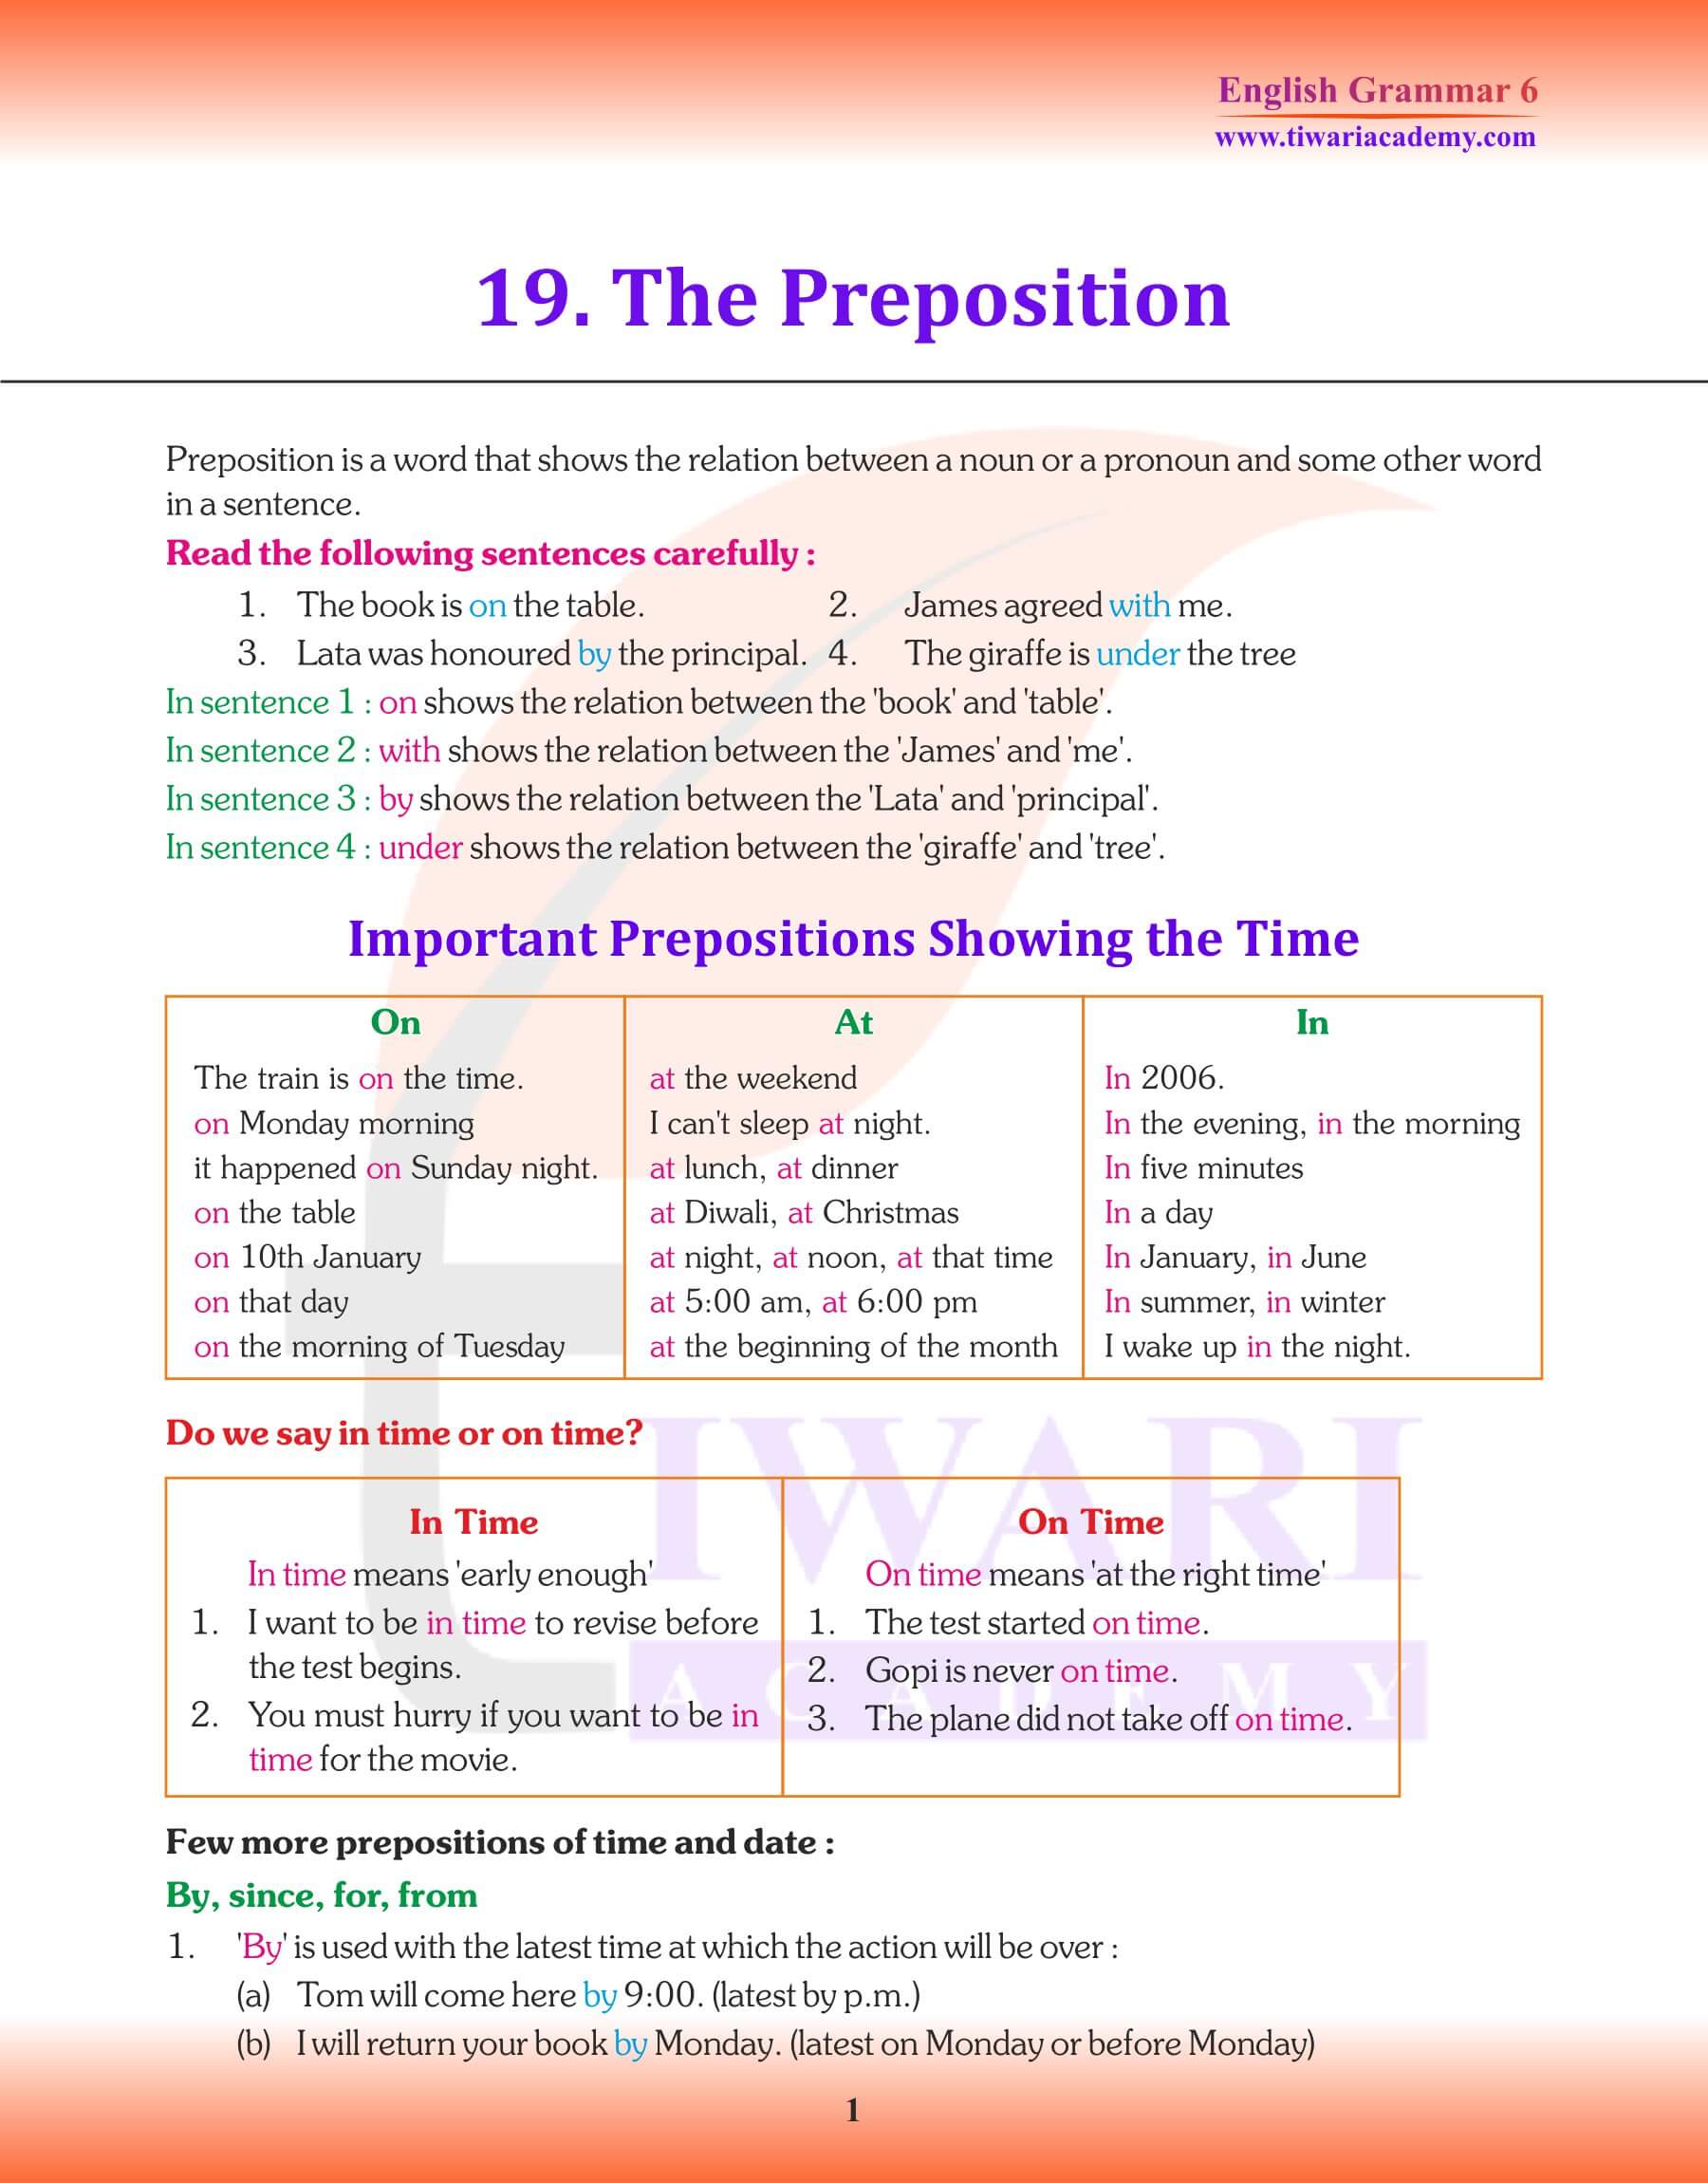 Class 6 Grammar the Preposition notes